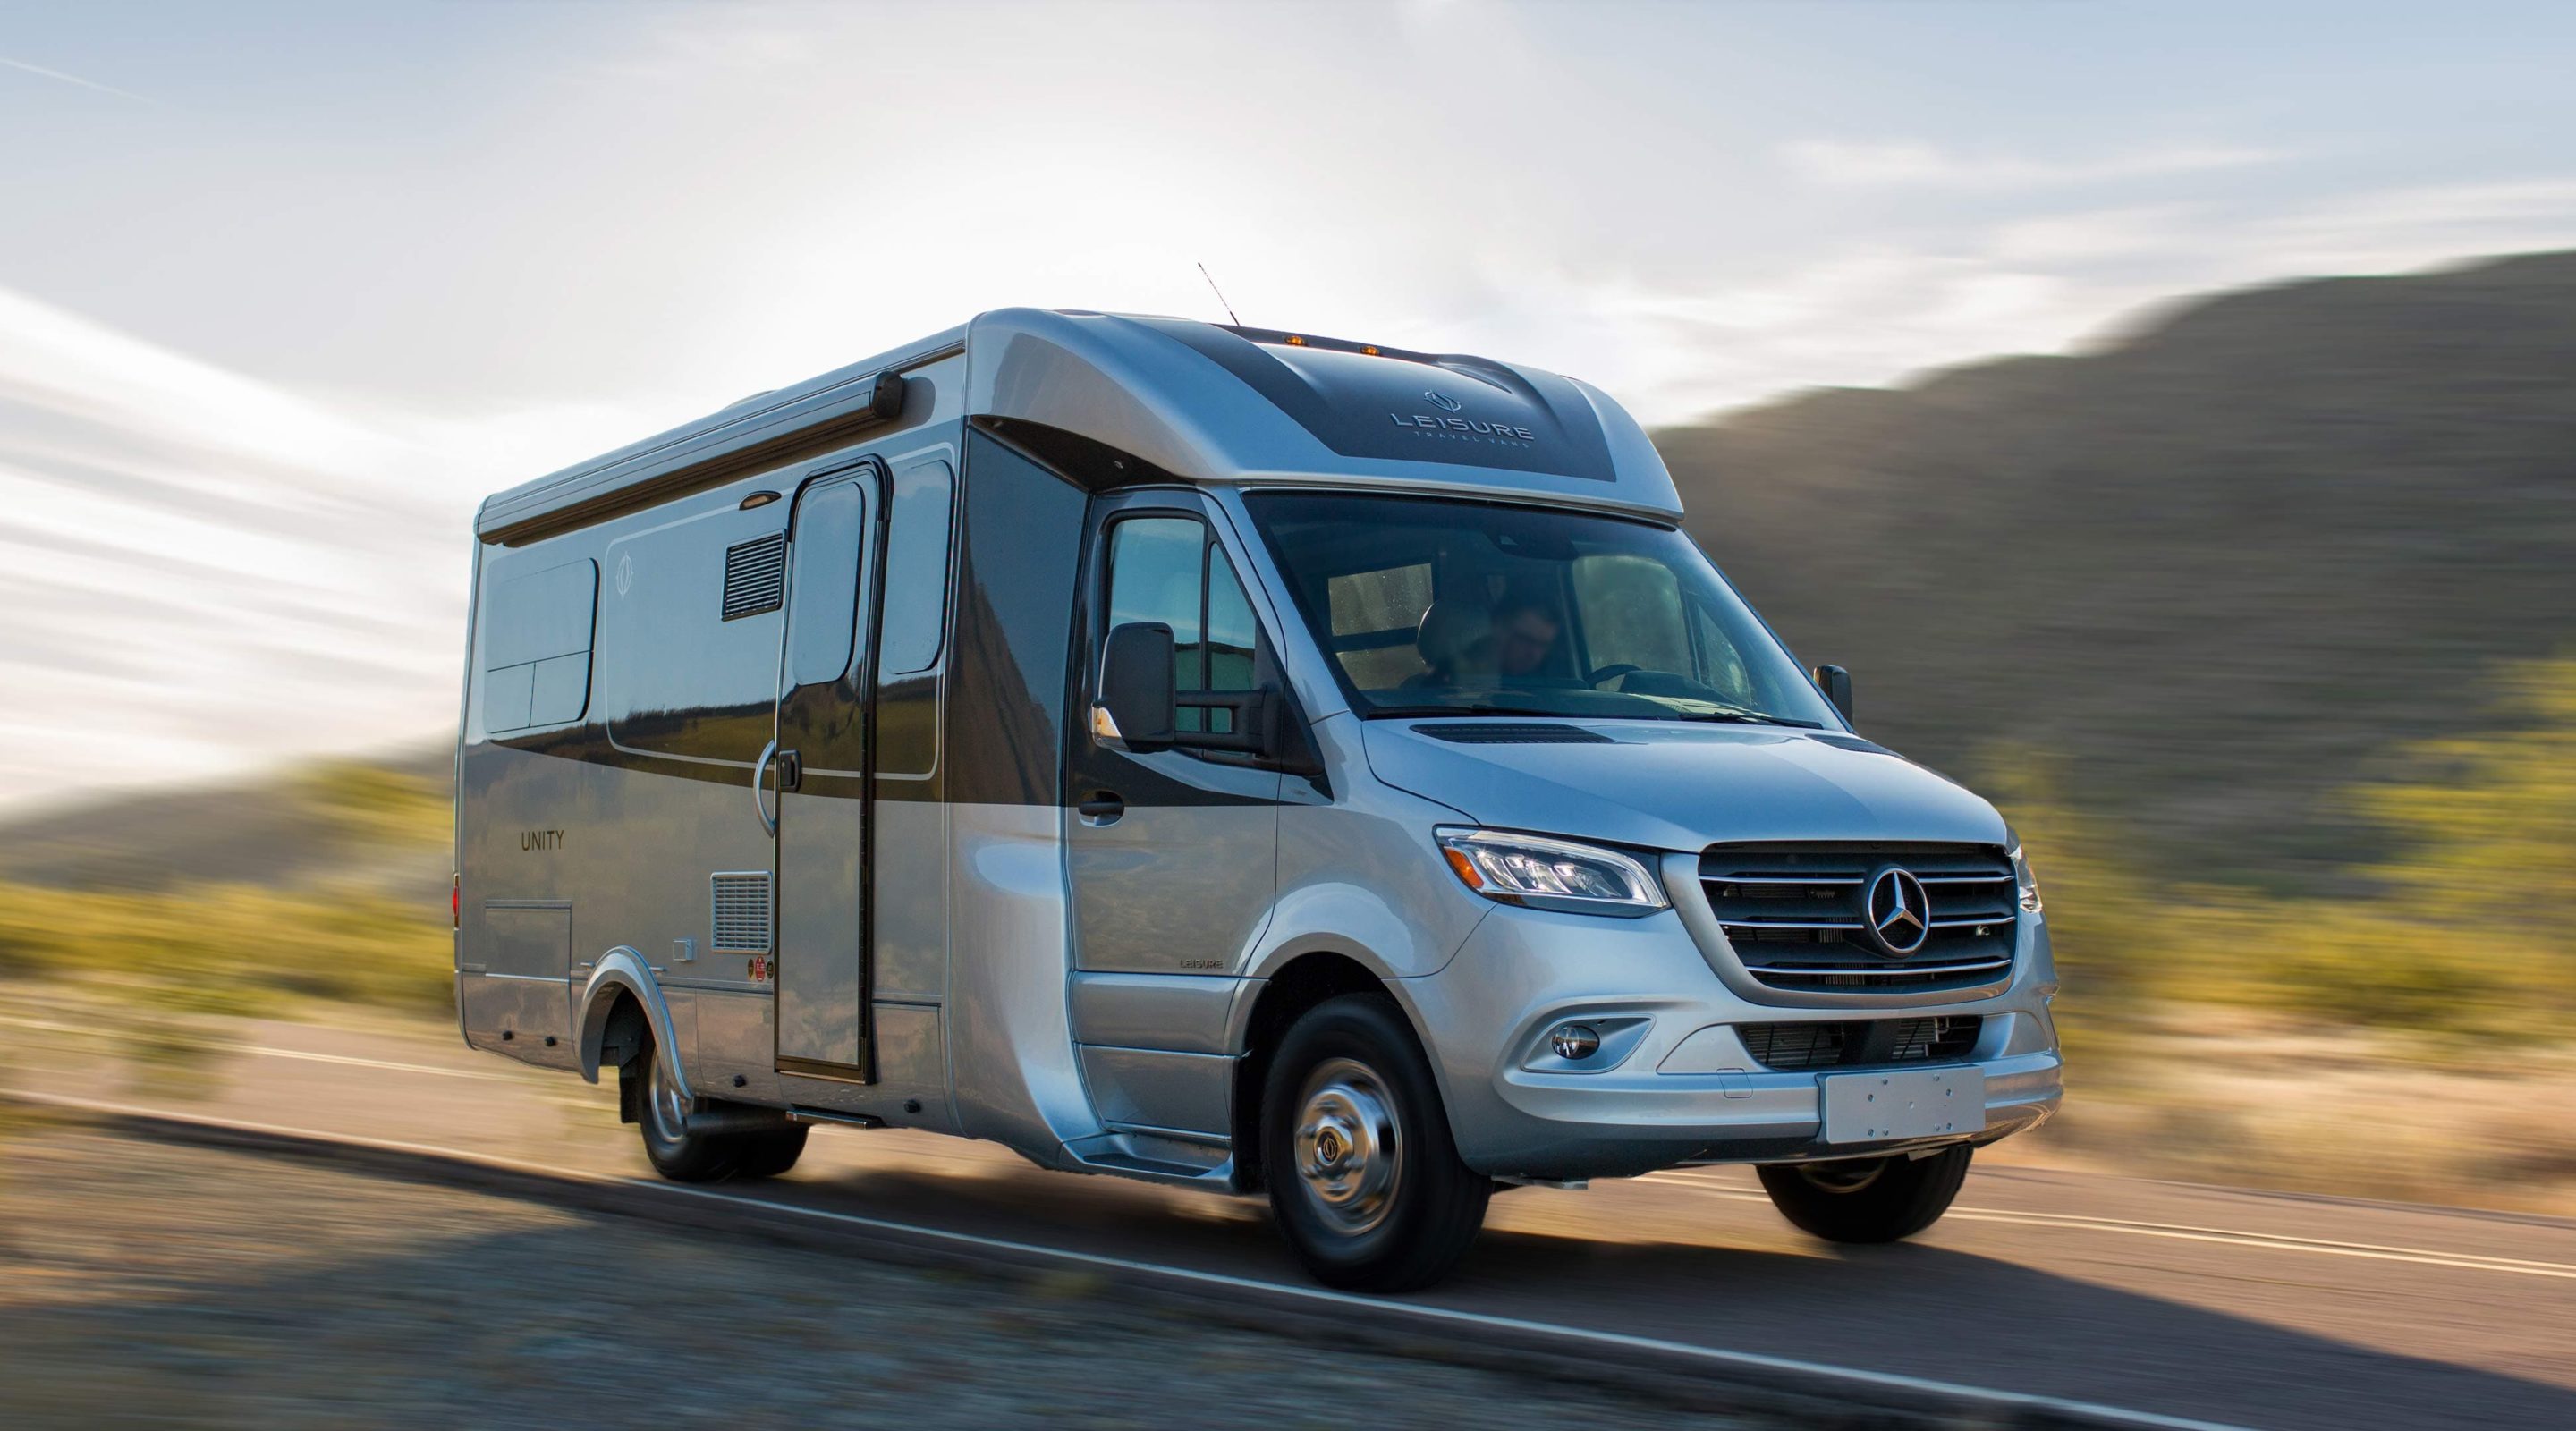 2019 Mercedes-Benz Sprinter Upgrades - Leisure Travel Vans